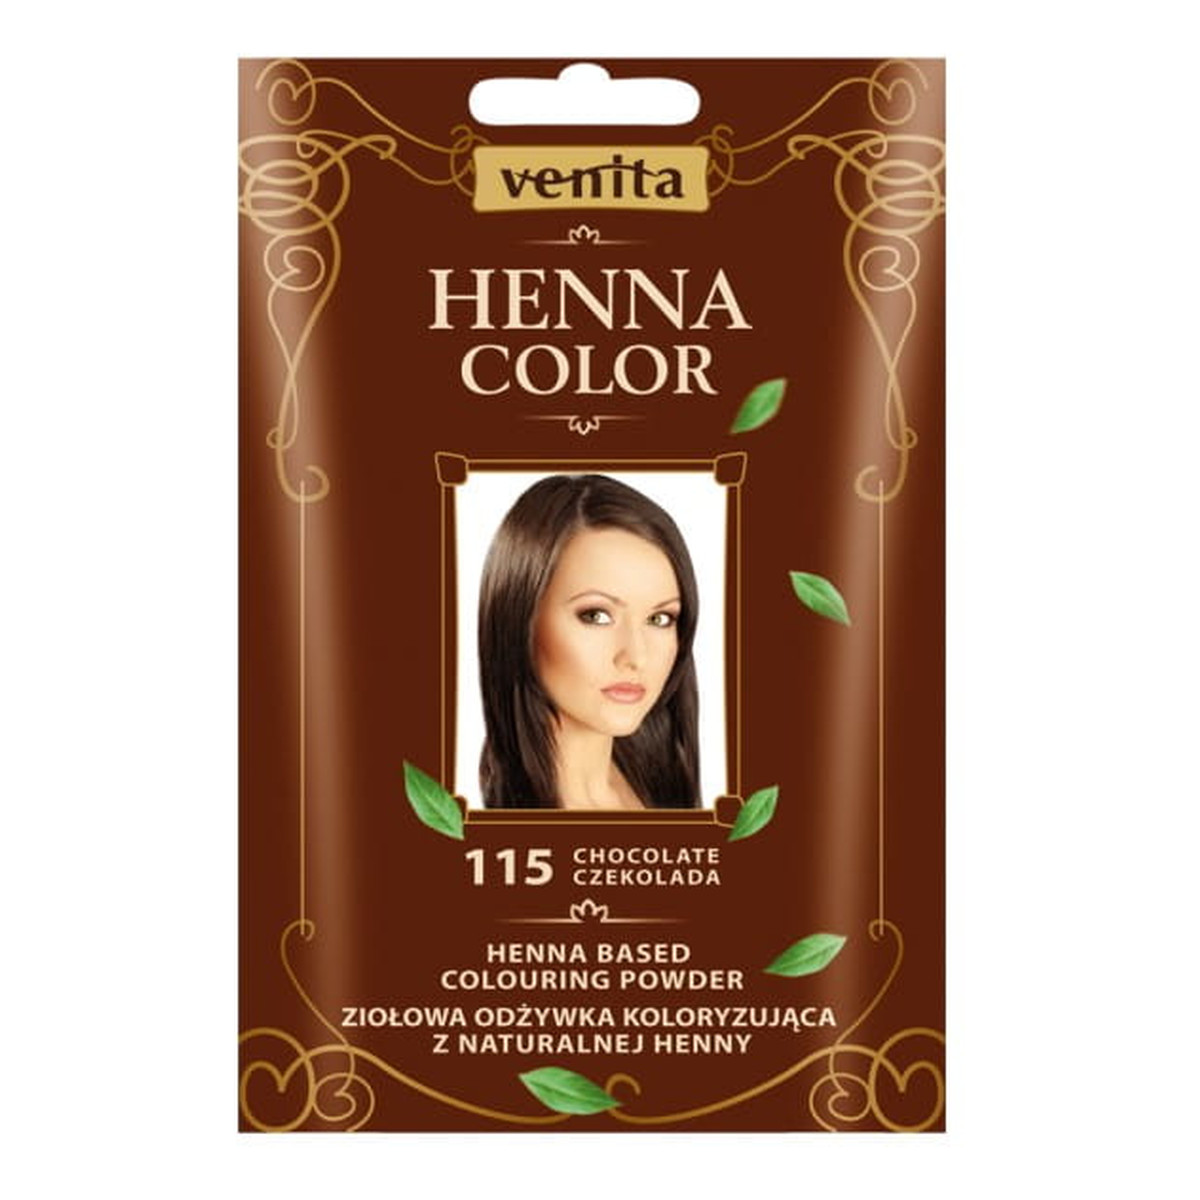 venita henna color ziołowa odżywka koloryzująca do włosów